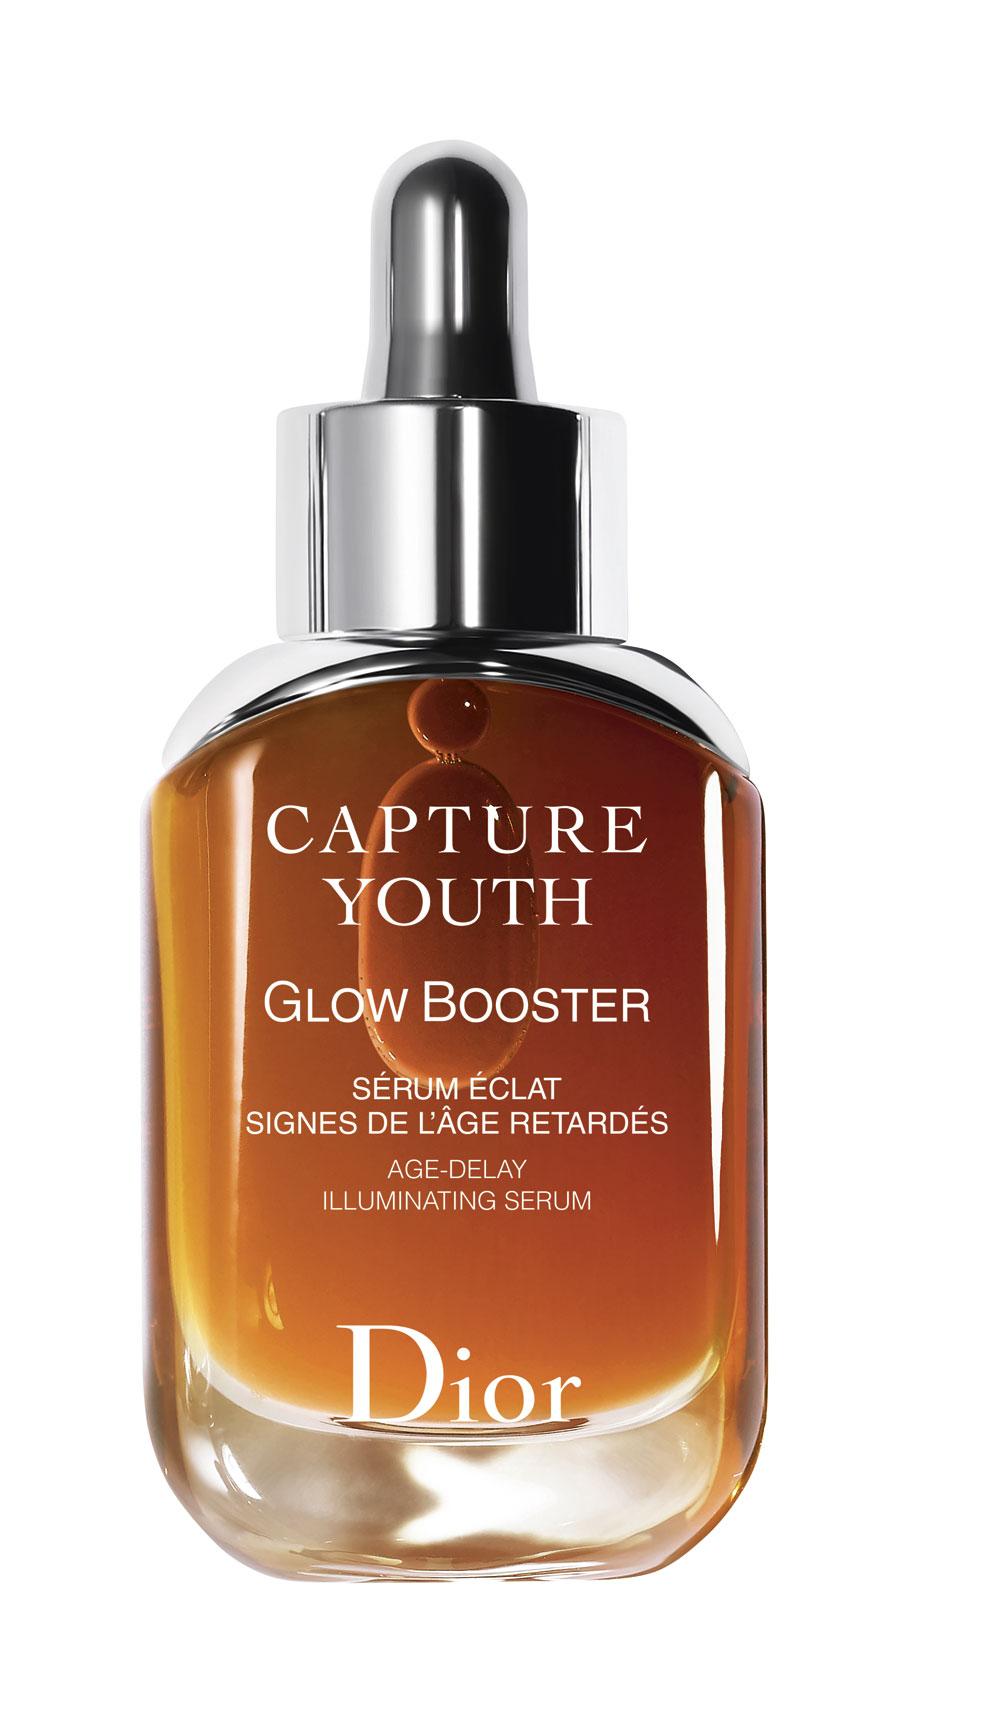 Je teint blijft vaal? Volg een vitamine C-kuurtje. Meng een maand lang Capture Youth Glow Booster (100,28 euro, vanaf 11 januari beschikbaar) van Dior onder je dagcrème.